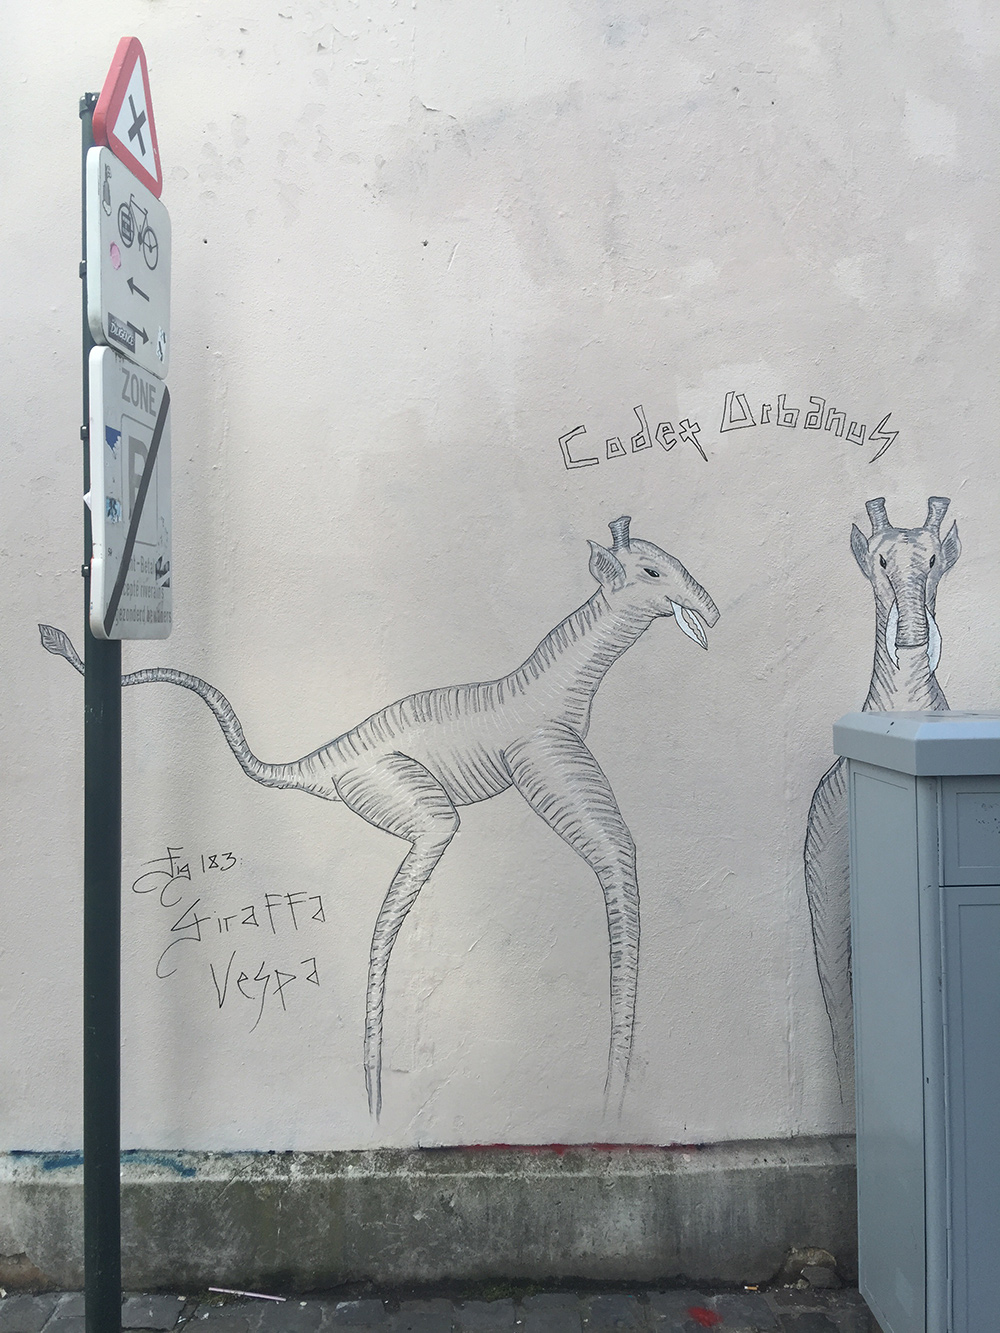 Codex Urbanus, Giraffa Vespa, rue des Chartreux, Bruxelles, Belgium